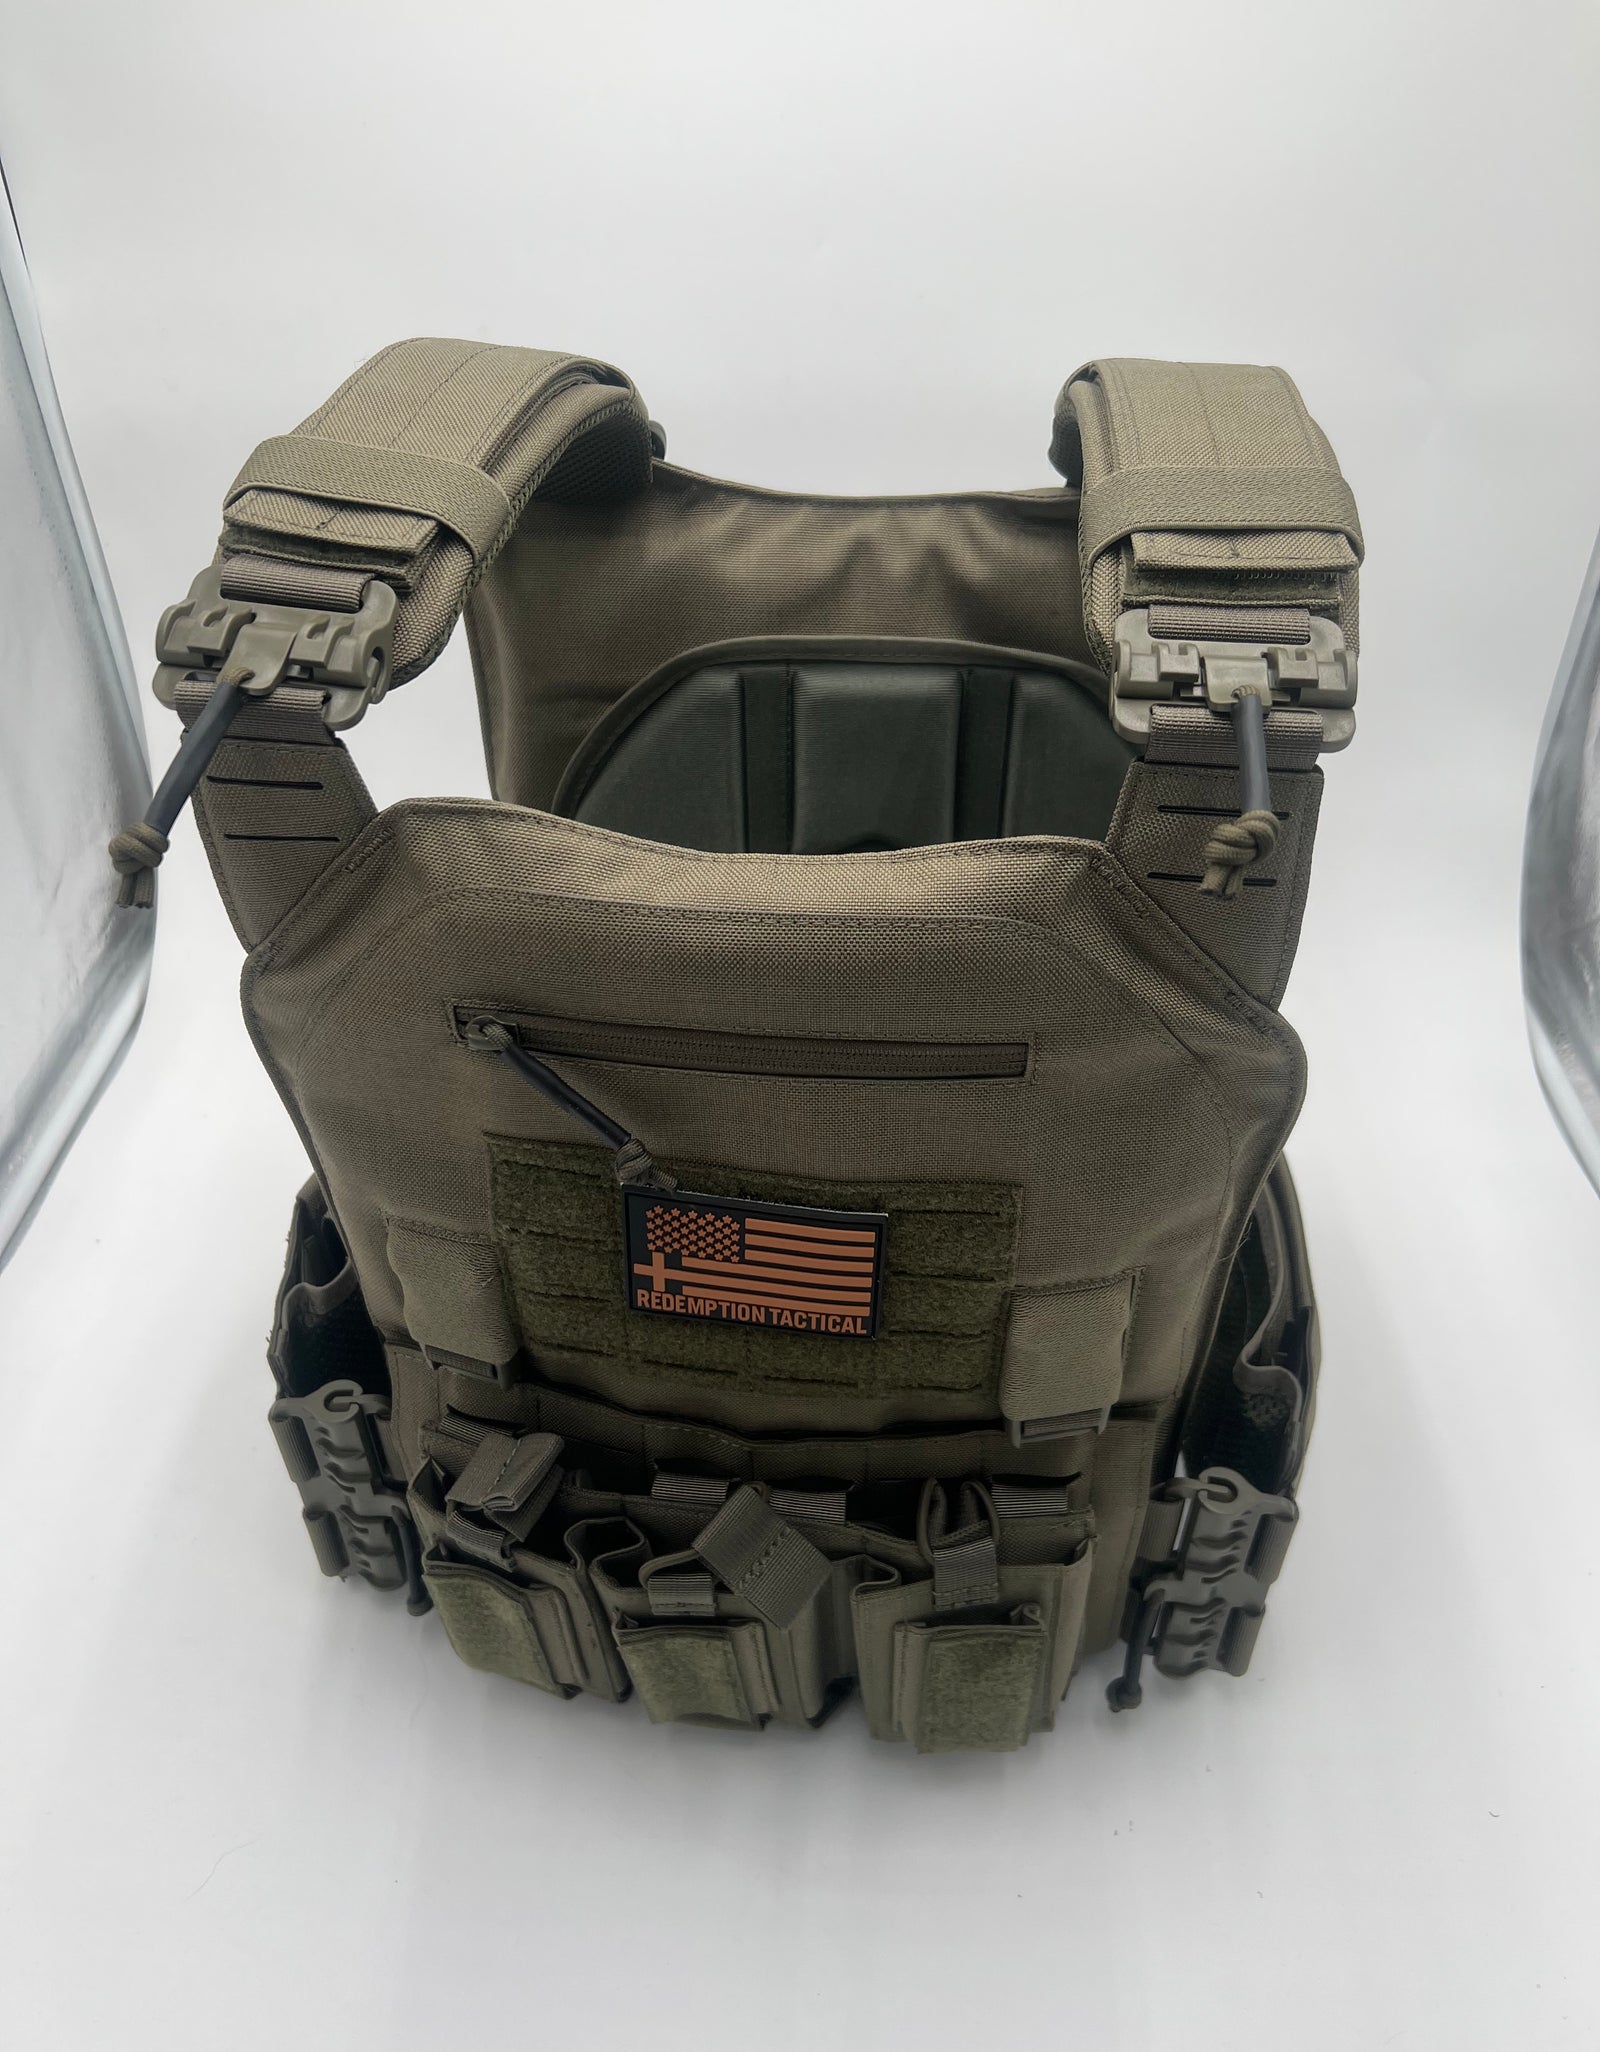 新規購入 個人装備 SET(BK) CARRIER PLATE Gear Tactical Volk 個人 